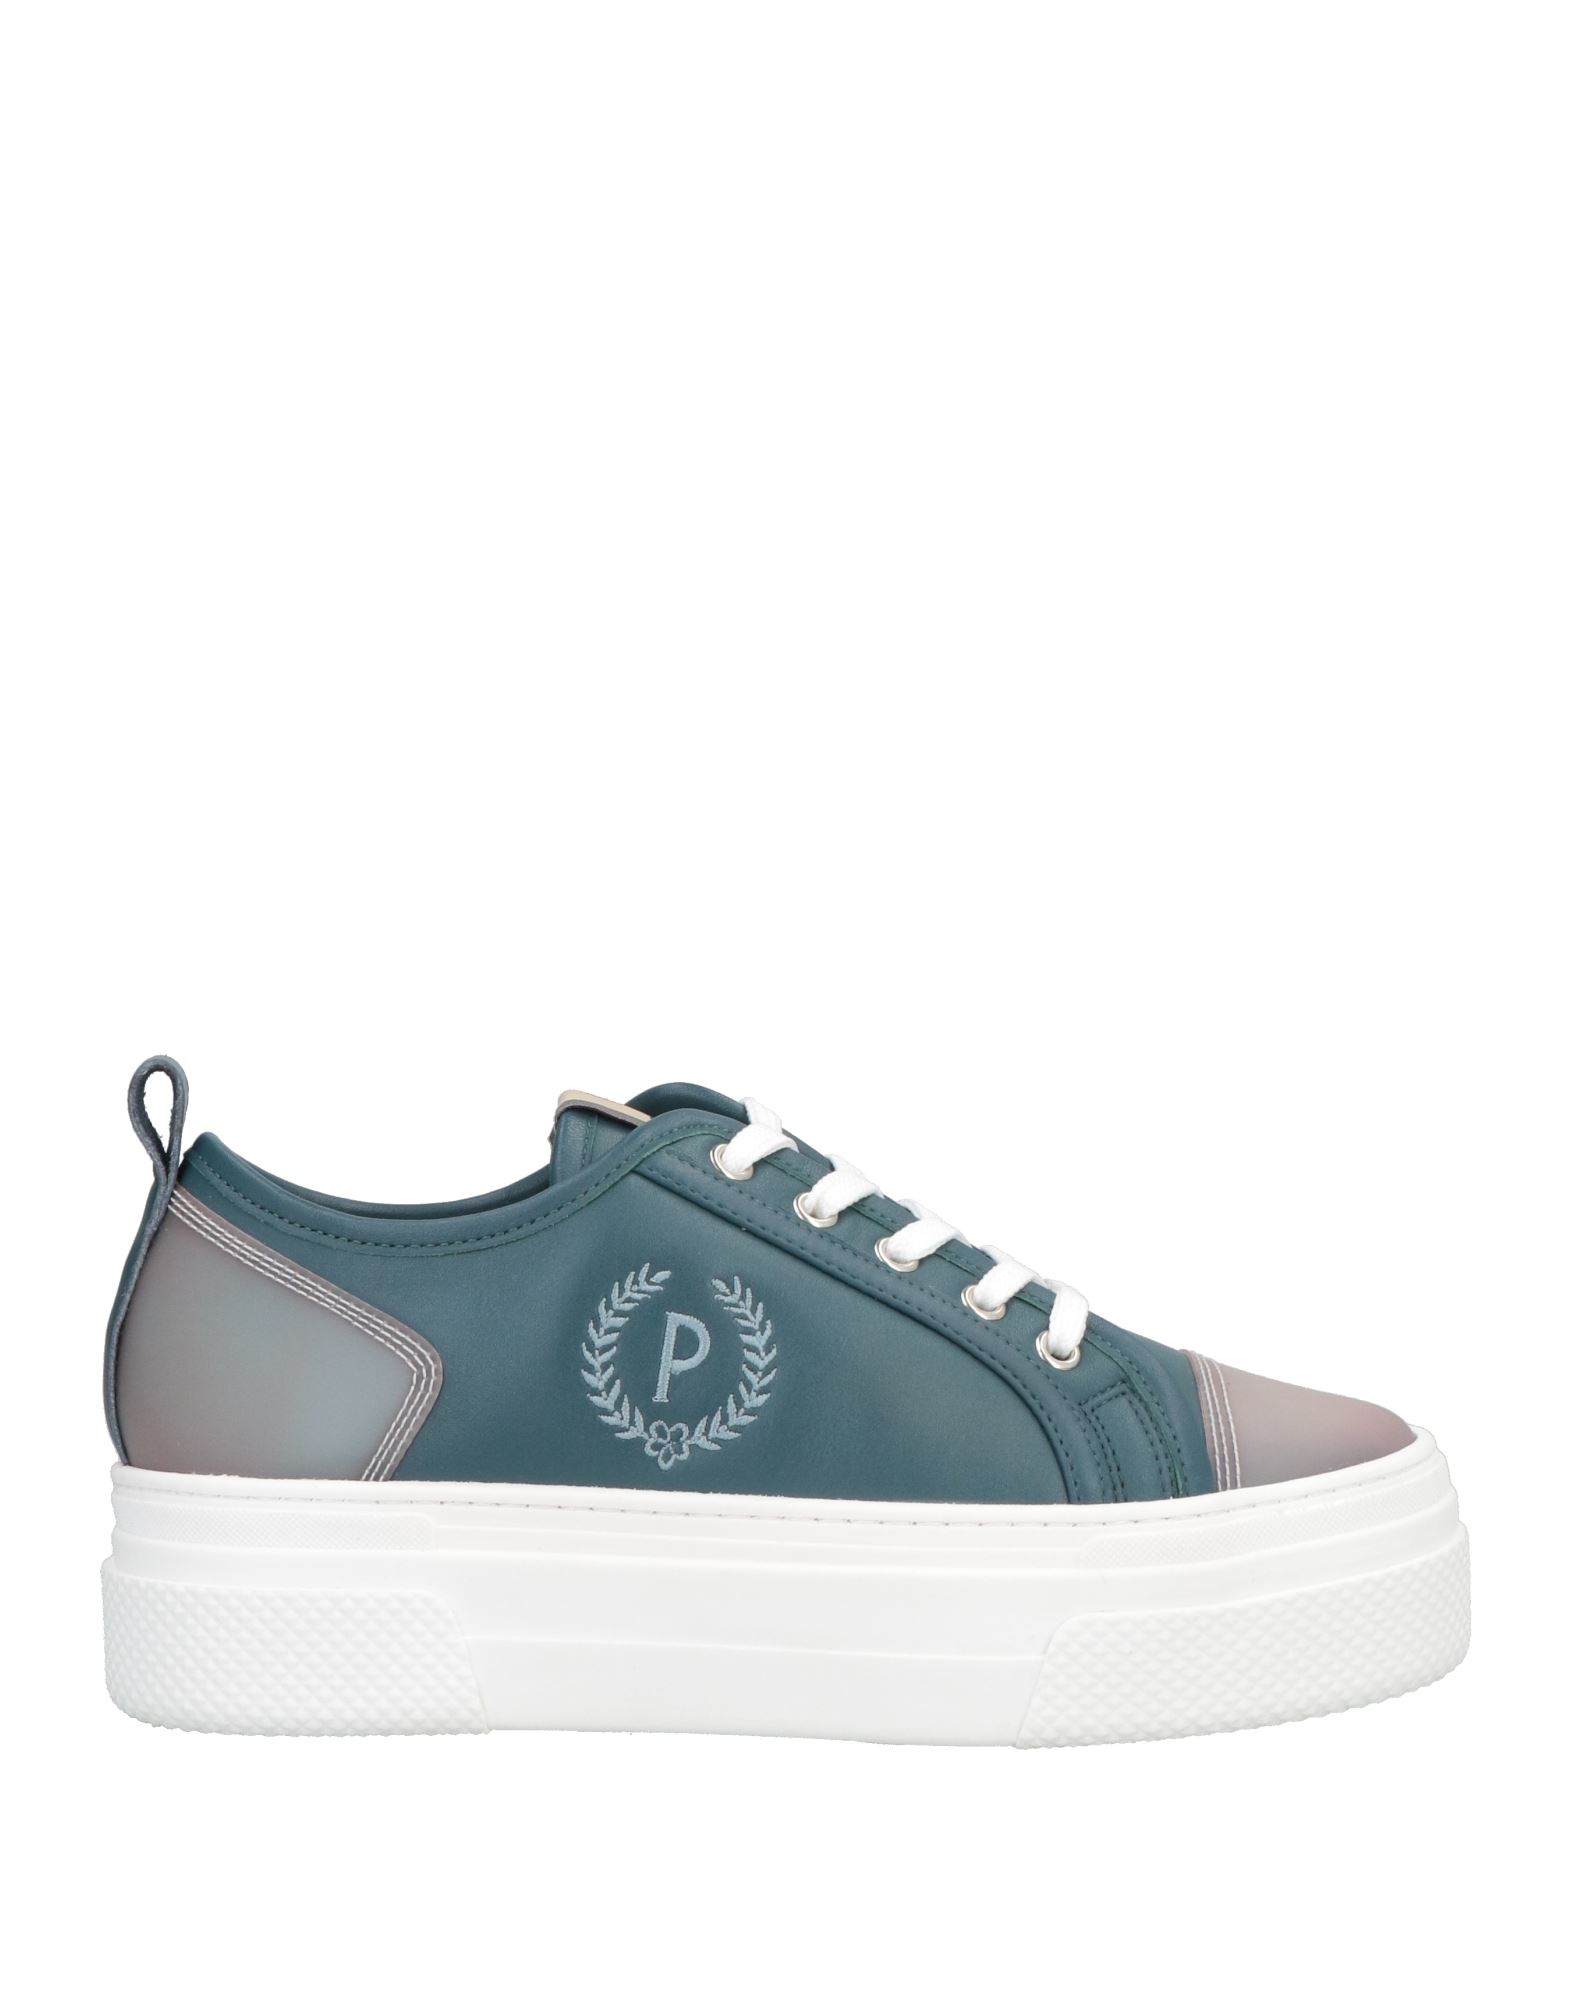 Pollini Sneakers In Light Grey